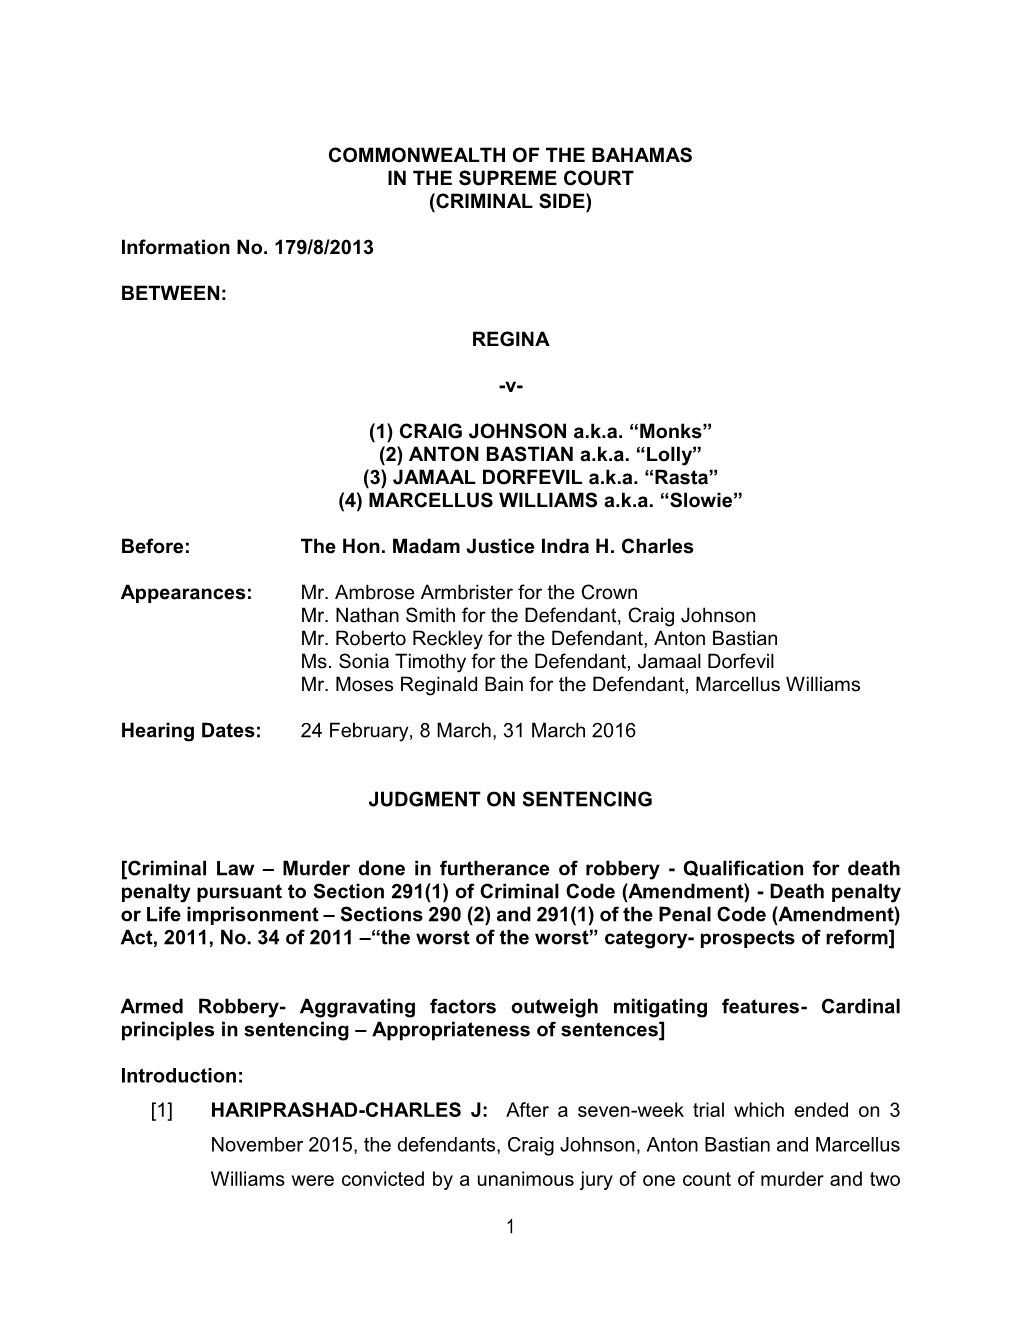 (CRIMINAL SIDE) Information No. 179/8/2013 BETWEEN: REGINA -V